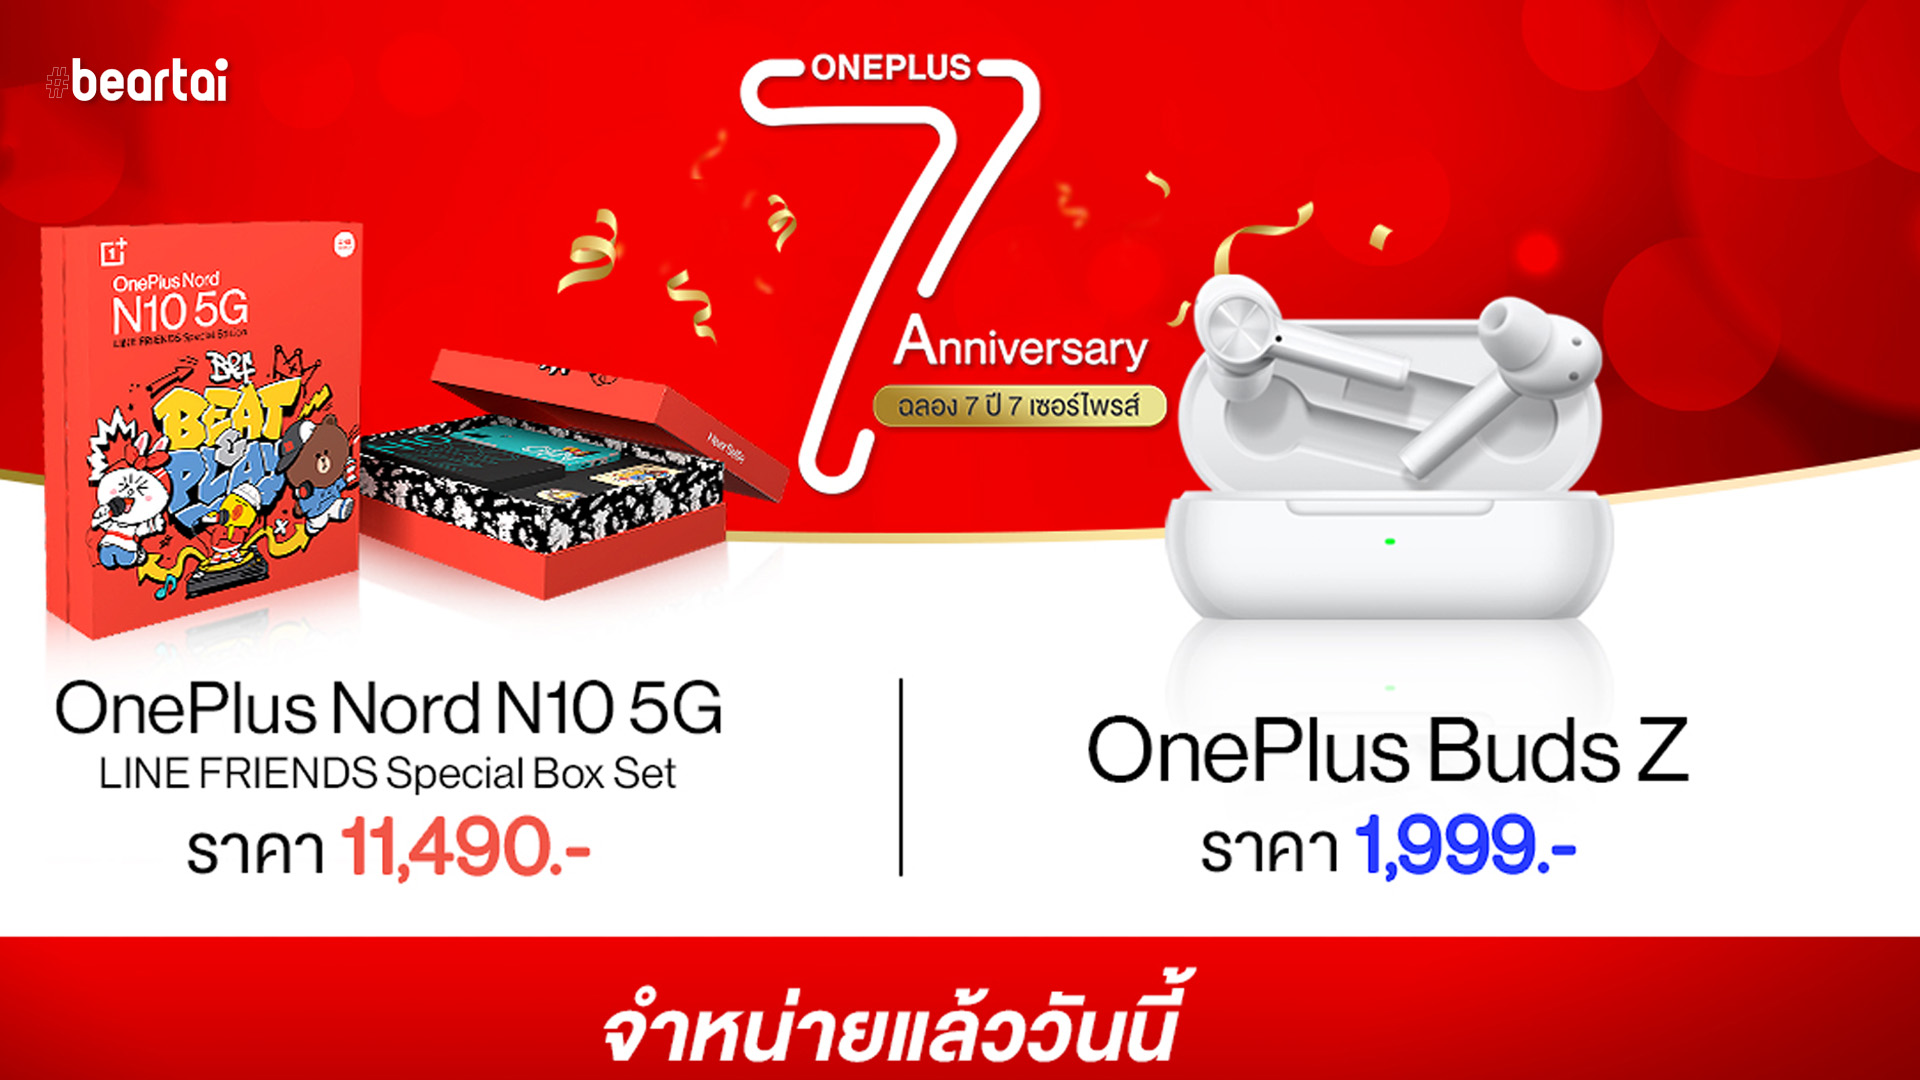 ครบรอบ 7 ปี OnePlus จัดเซอร์ไพรส์สุดยิ่งใหญ่กับ OnePlus Nord N10 5G LINE FRIENDS Special Box Set